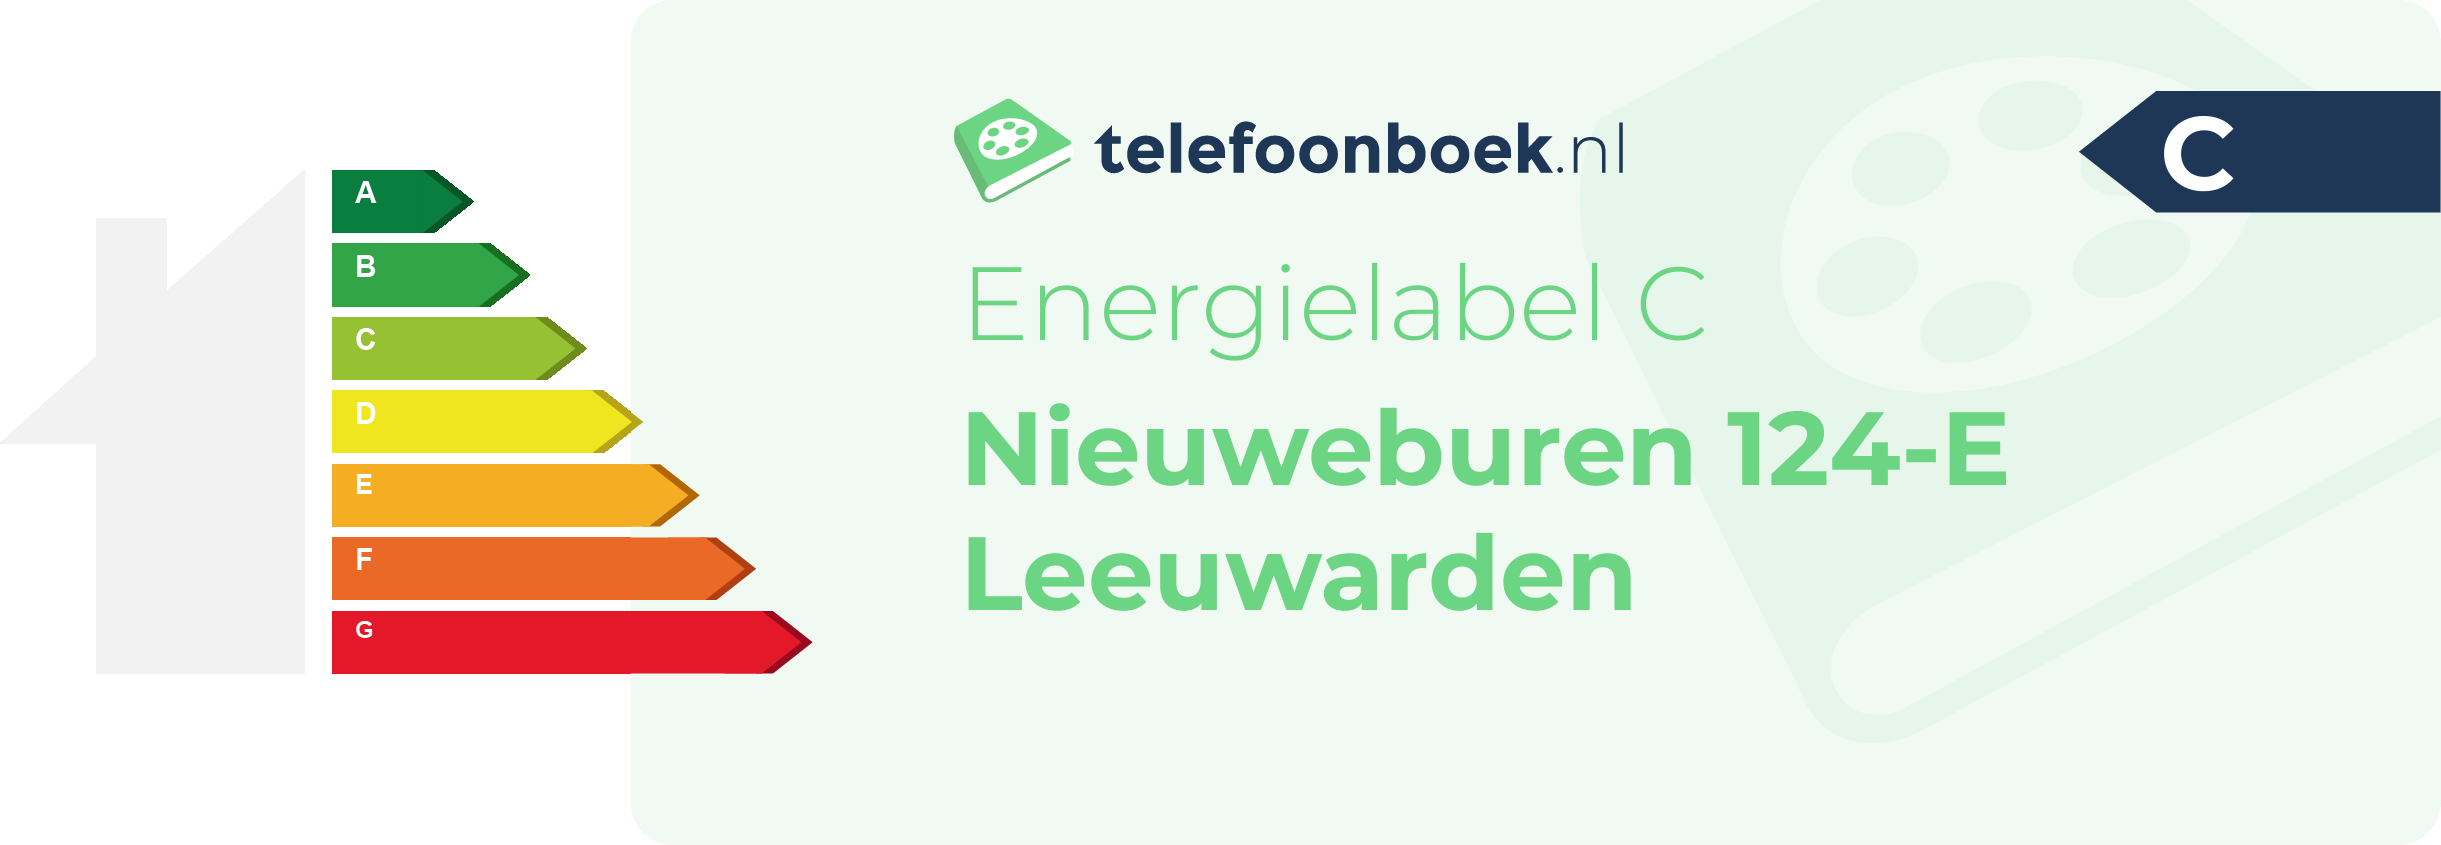 Energielabel Nieuweburen 124-E Leeuwarden